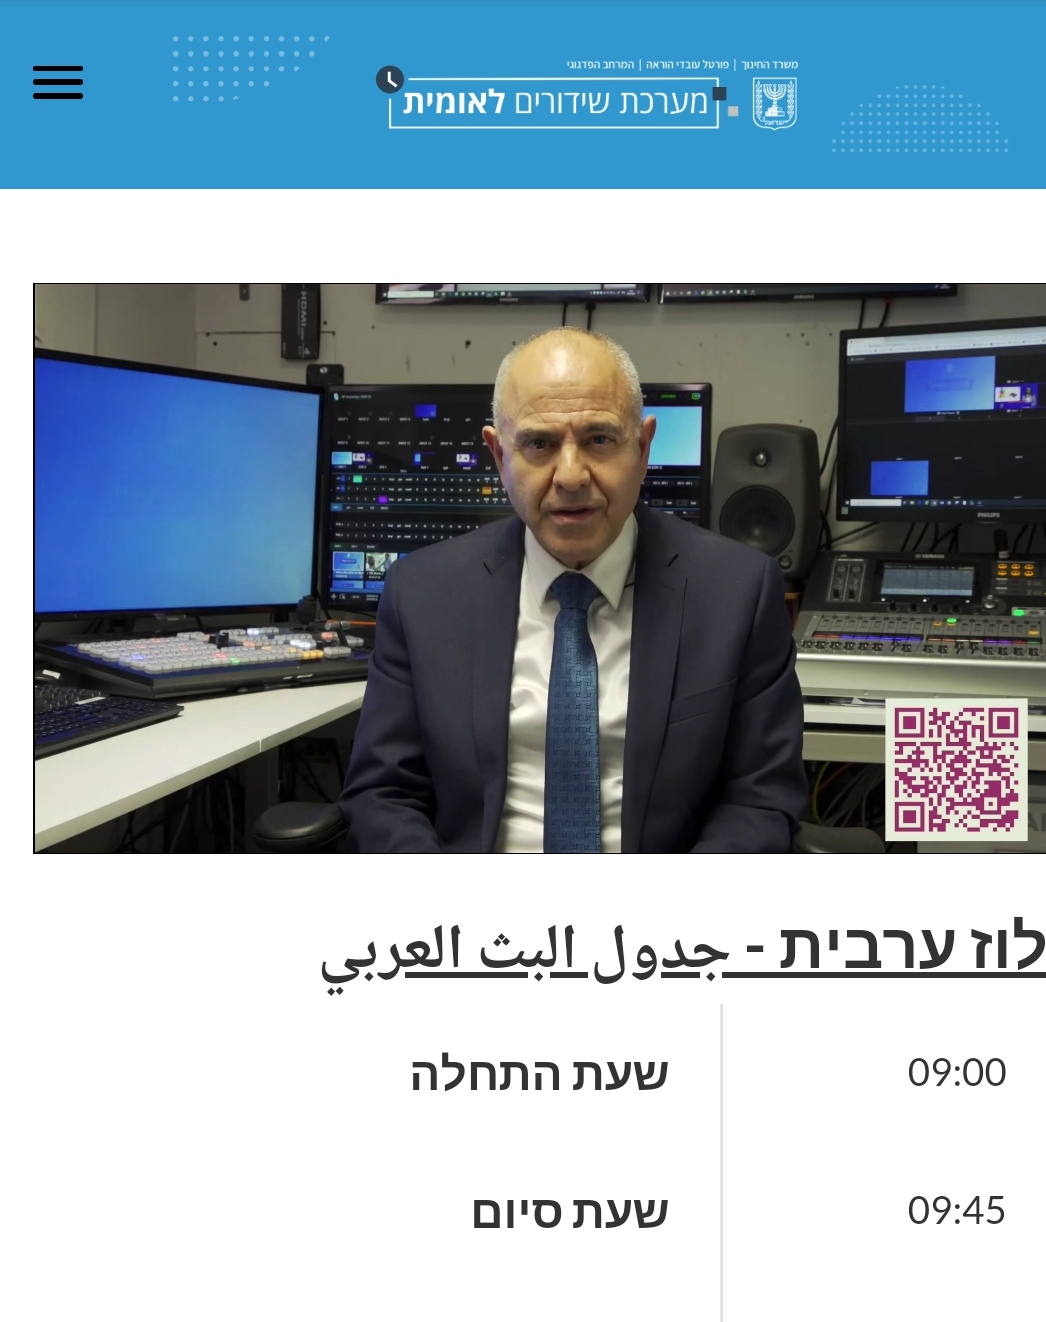 لوحة البث العربي في نظام  الإذاعة الوطنية لوزارة التربية والتعليم